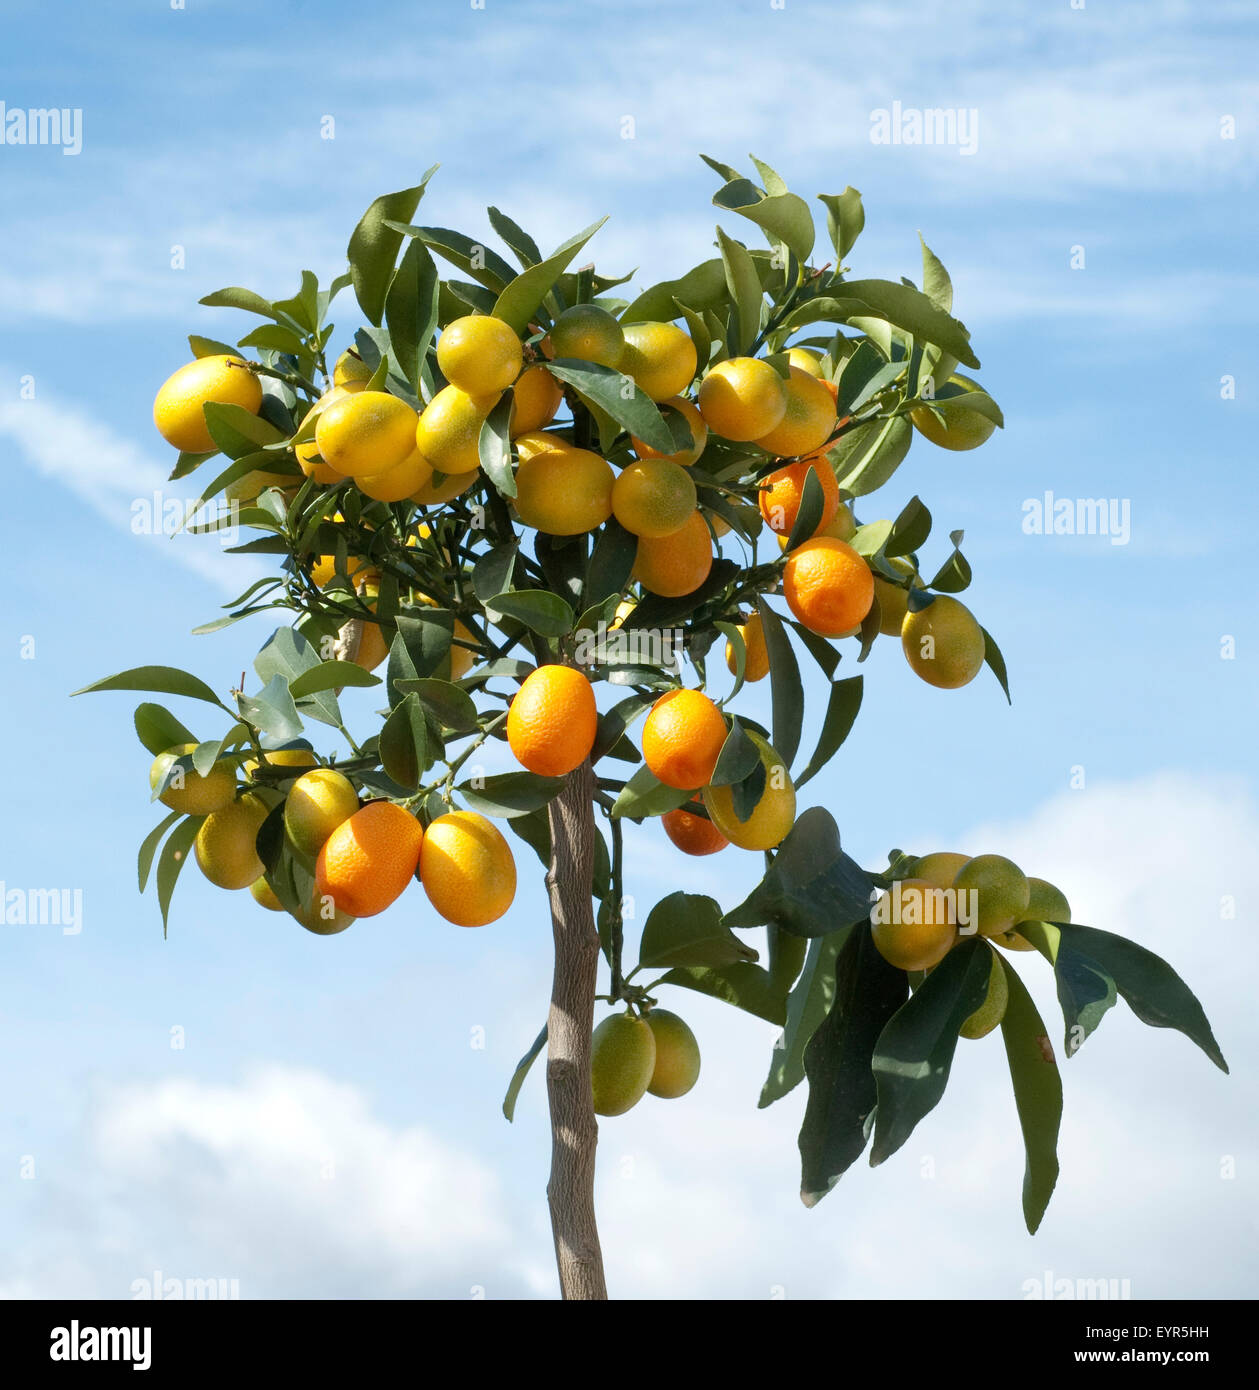 Kumquats; Fortunella; Citrus; Stock Photo